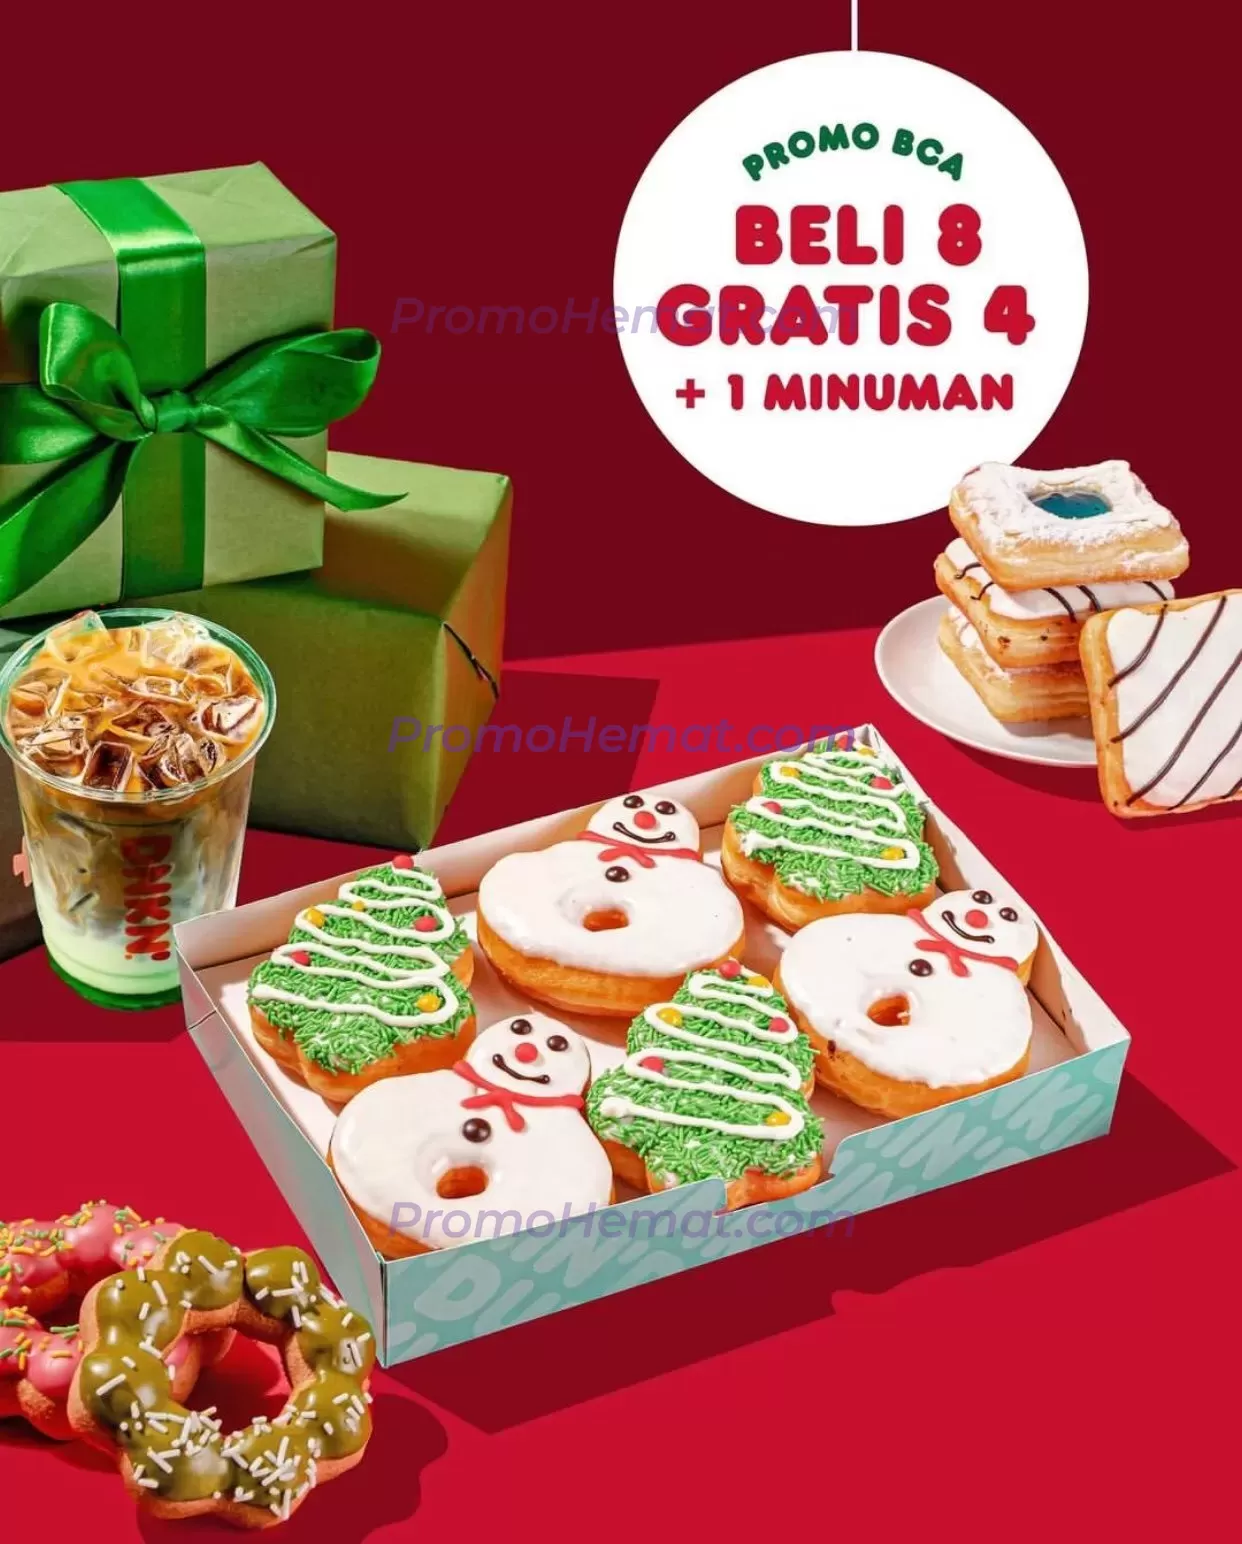 Promo Dunkin Donuts Beli 8 Gratis 4 + 1 Minuman Dengan Kartu Bca image_1